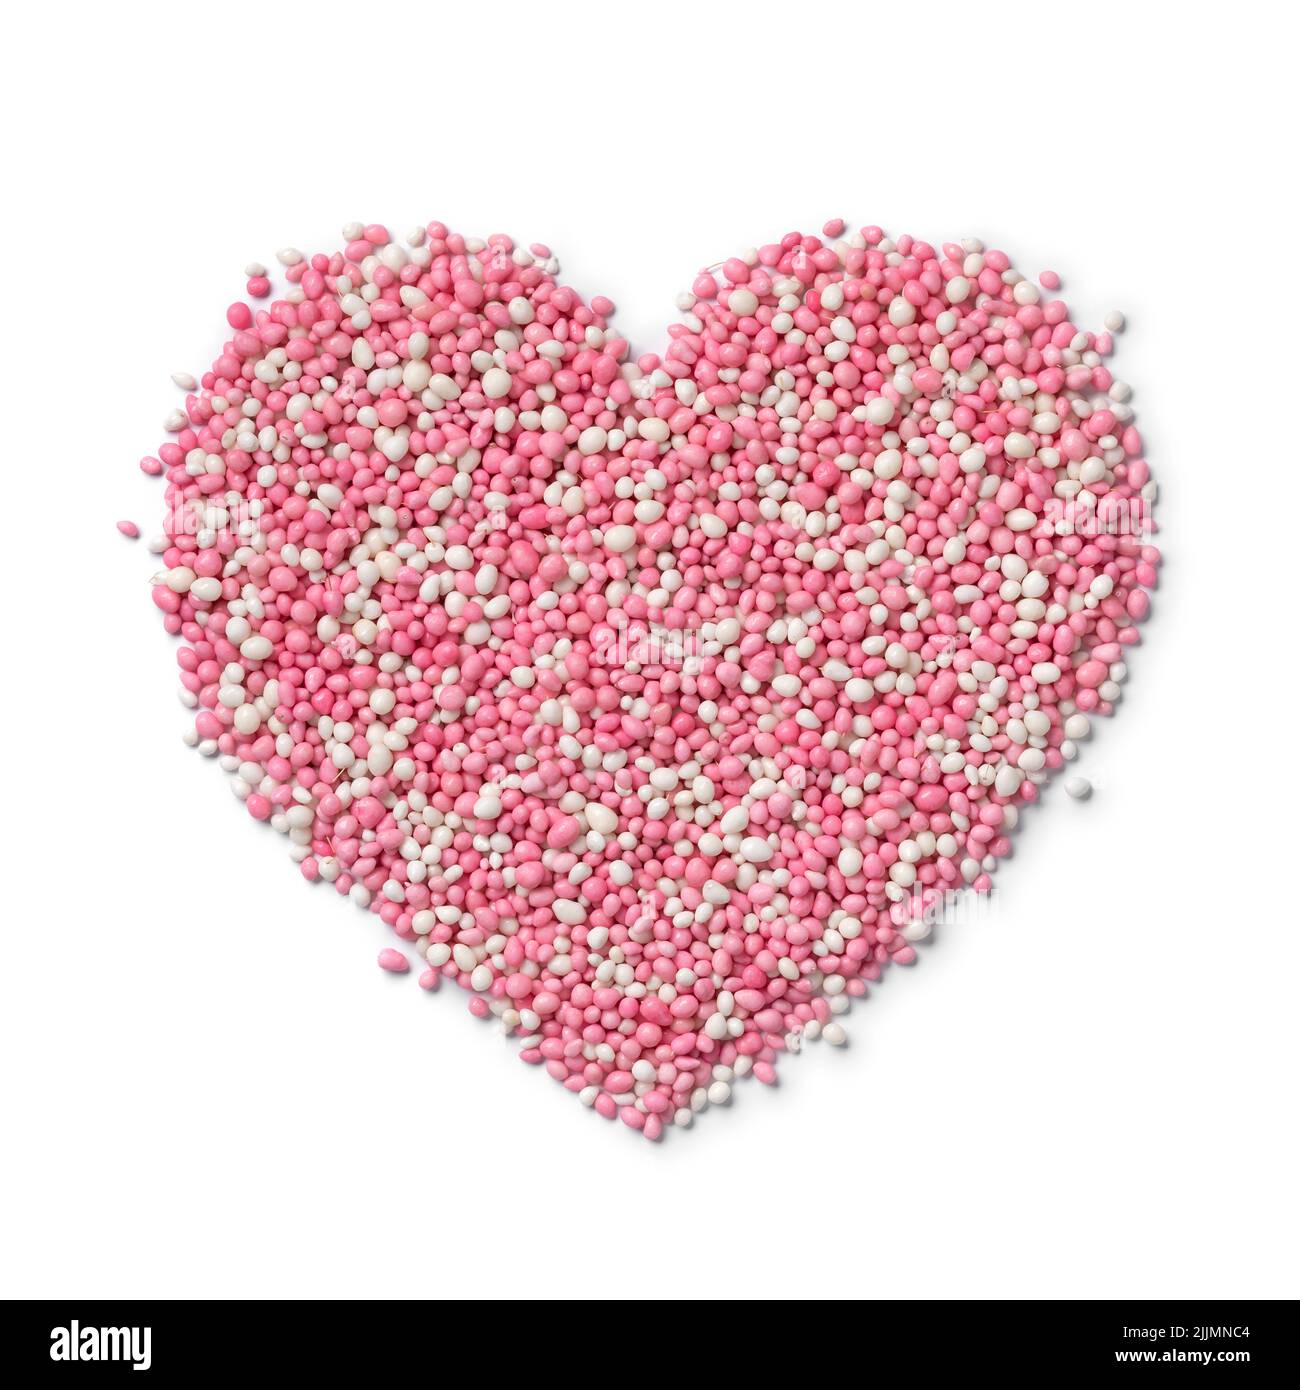 Arrosettes traditionnelles roses anis hollandaises pour célébrer la naissance d'une fille en forme de coeur isolée sur fond blanc Banque D'Images